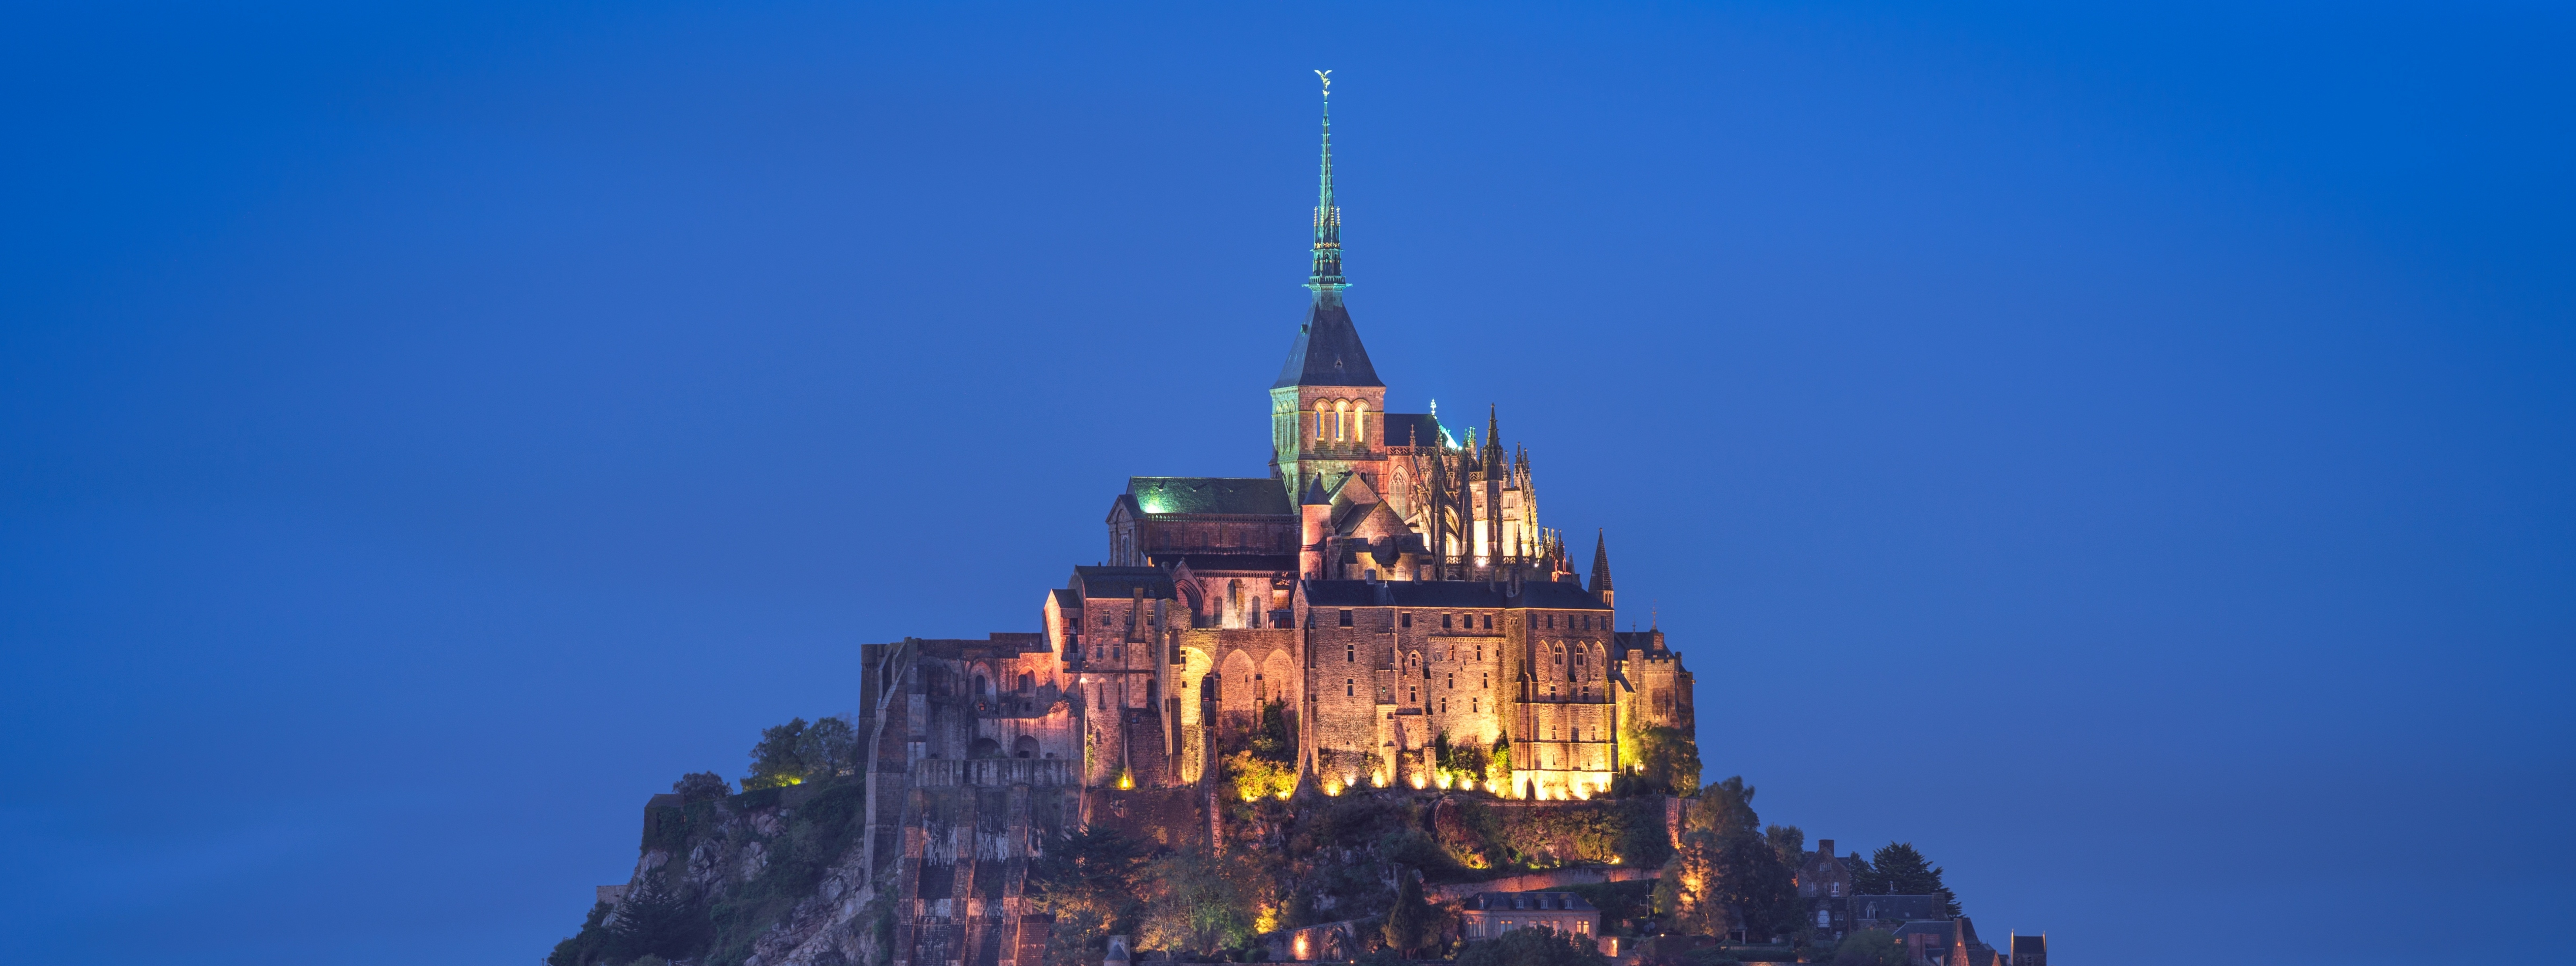 Le Mont Saint Michel Castle Wallpaper - Microsoft Wallpaper Castle , HD Wallpaper & Backgrounds